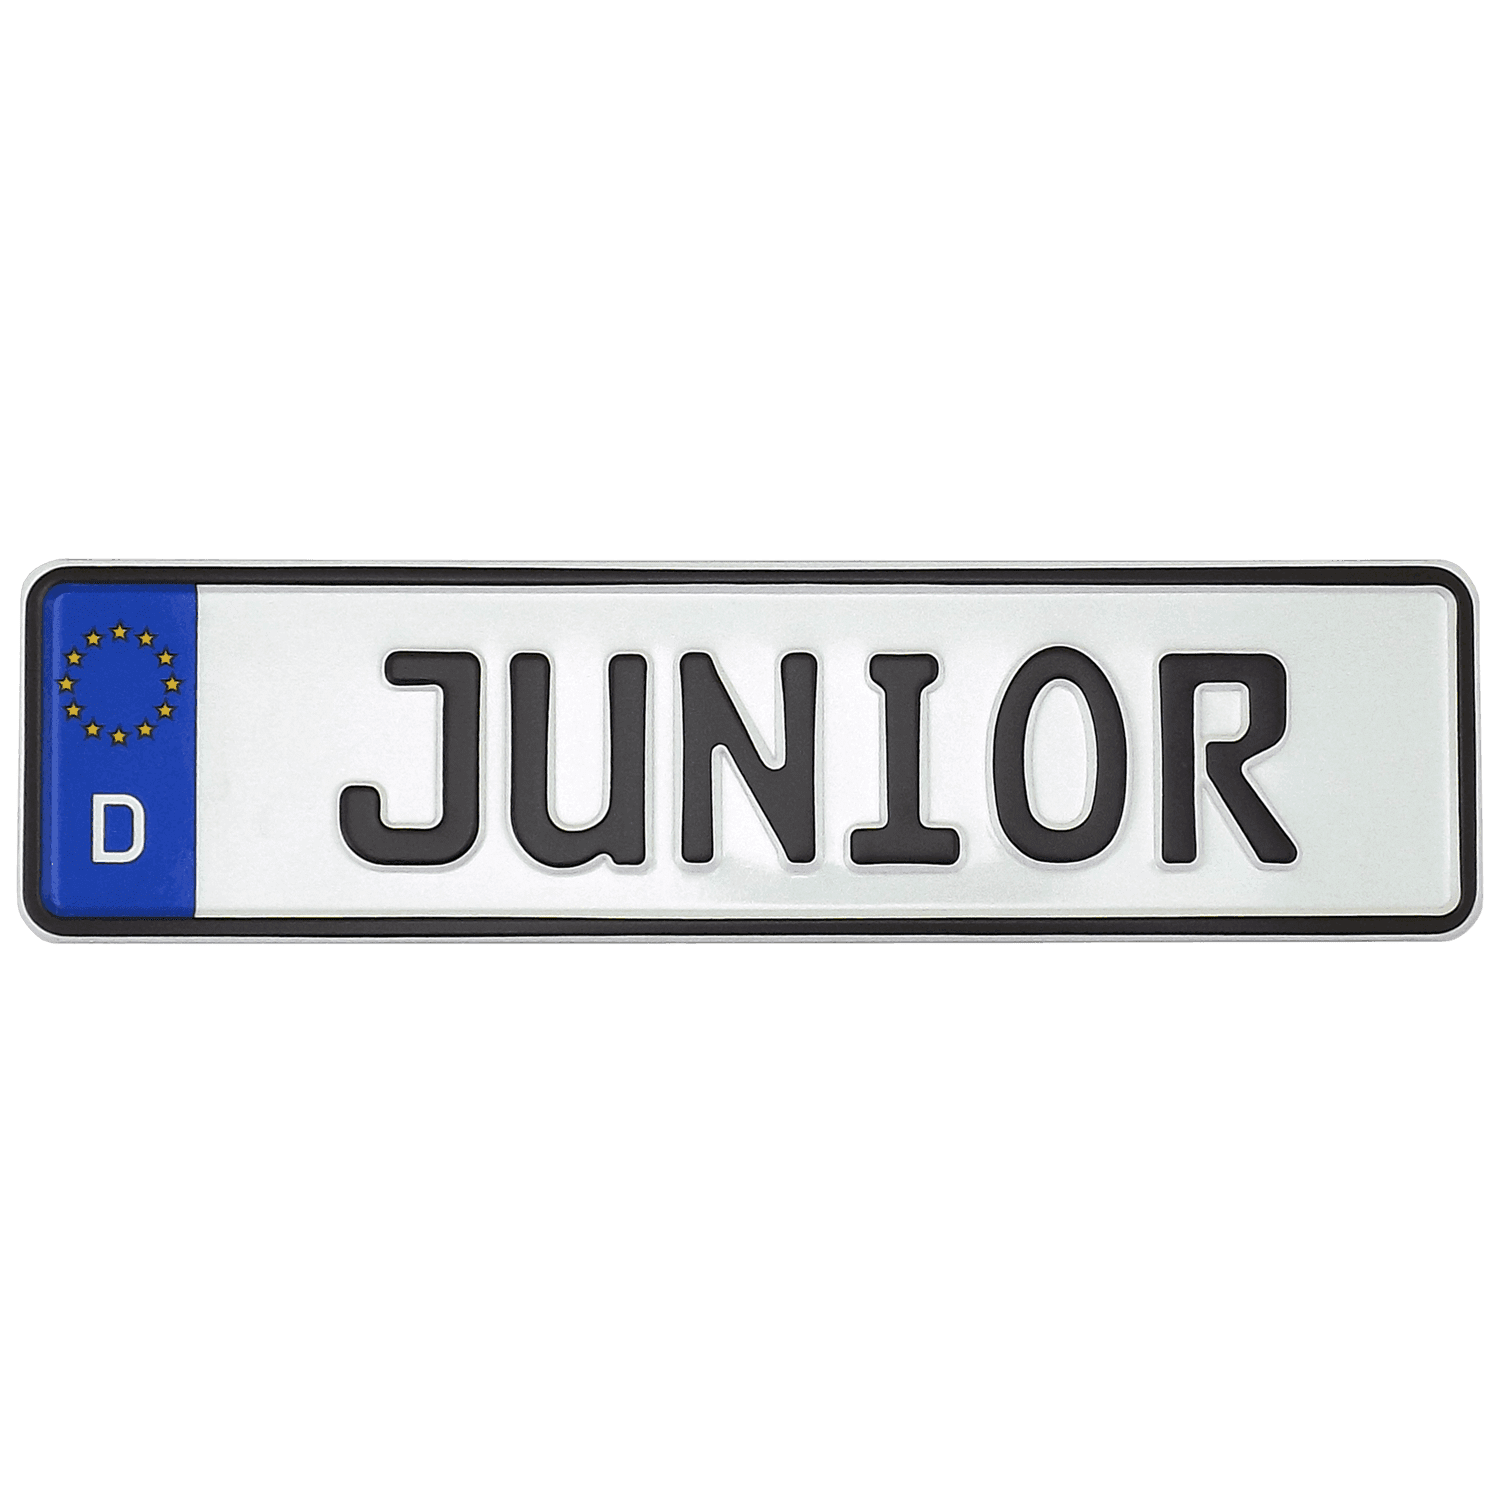 Juniorkennzeichen online kaufen